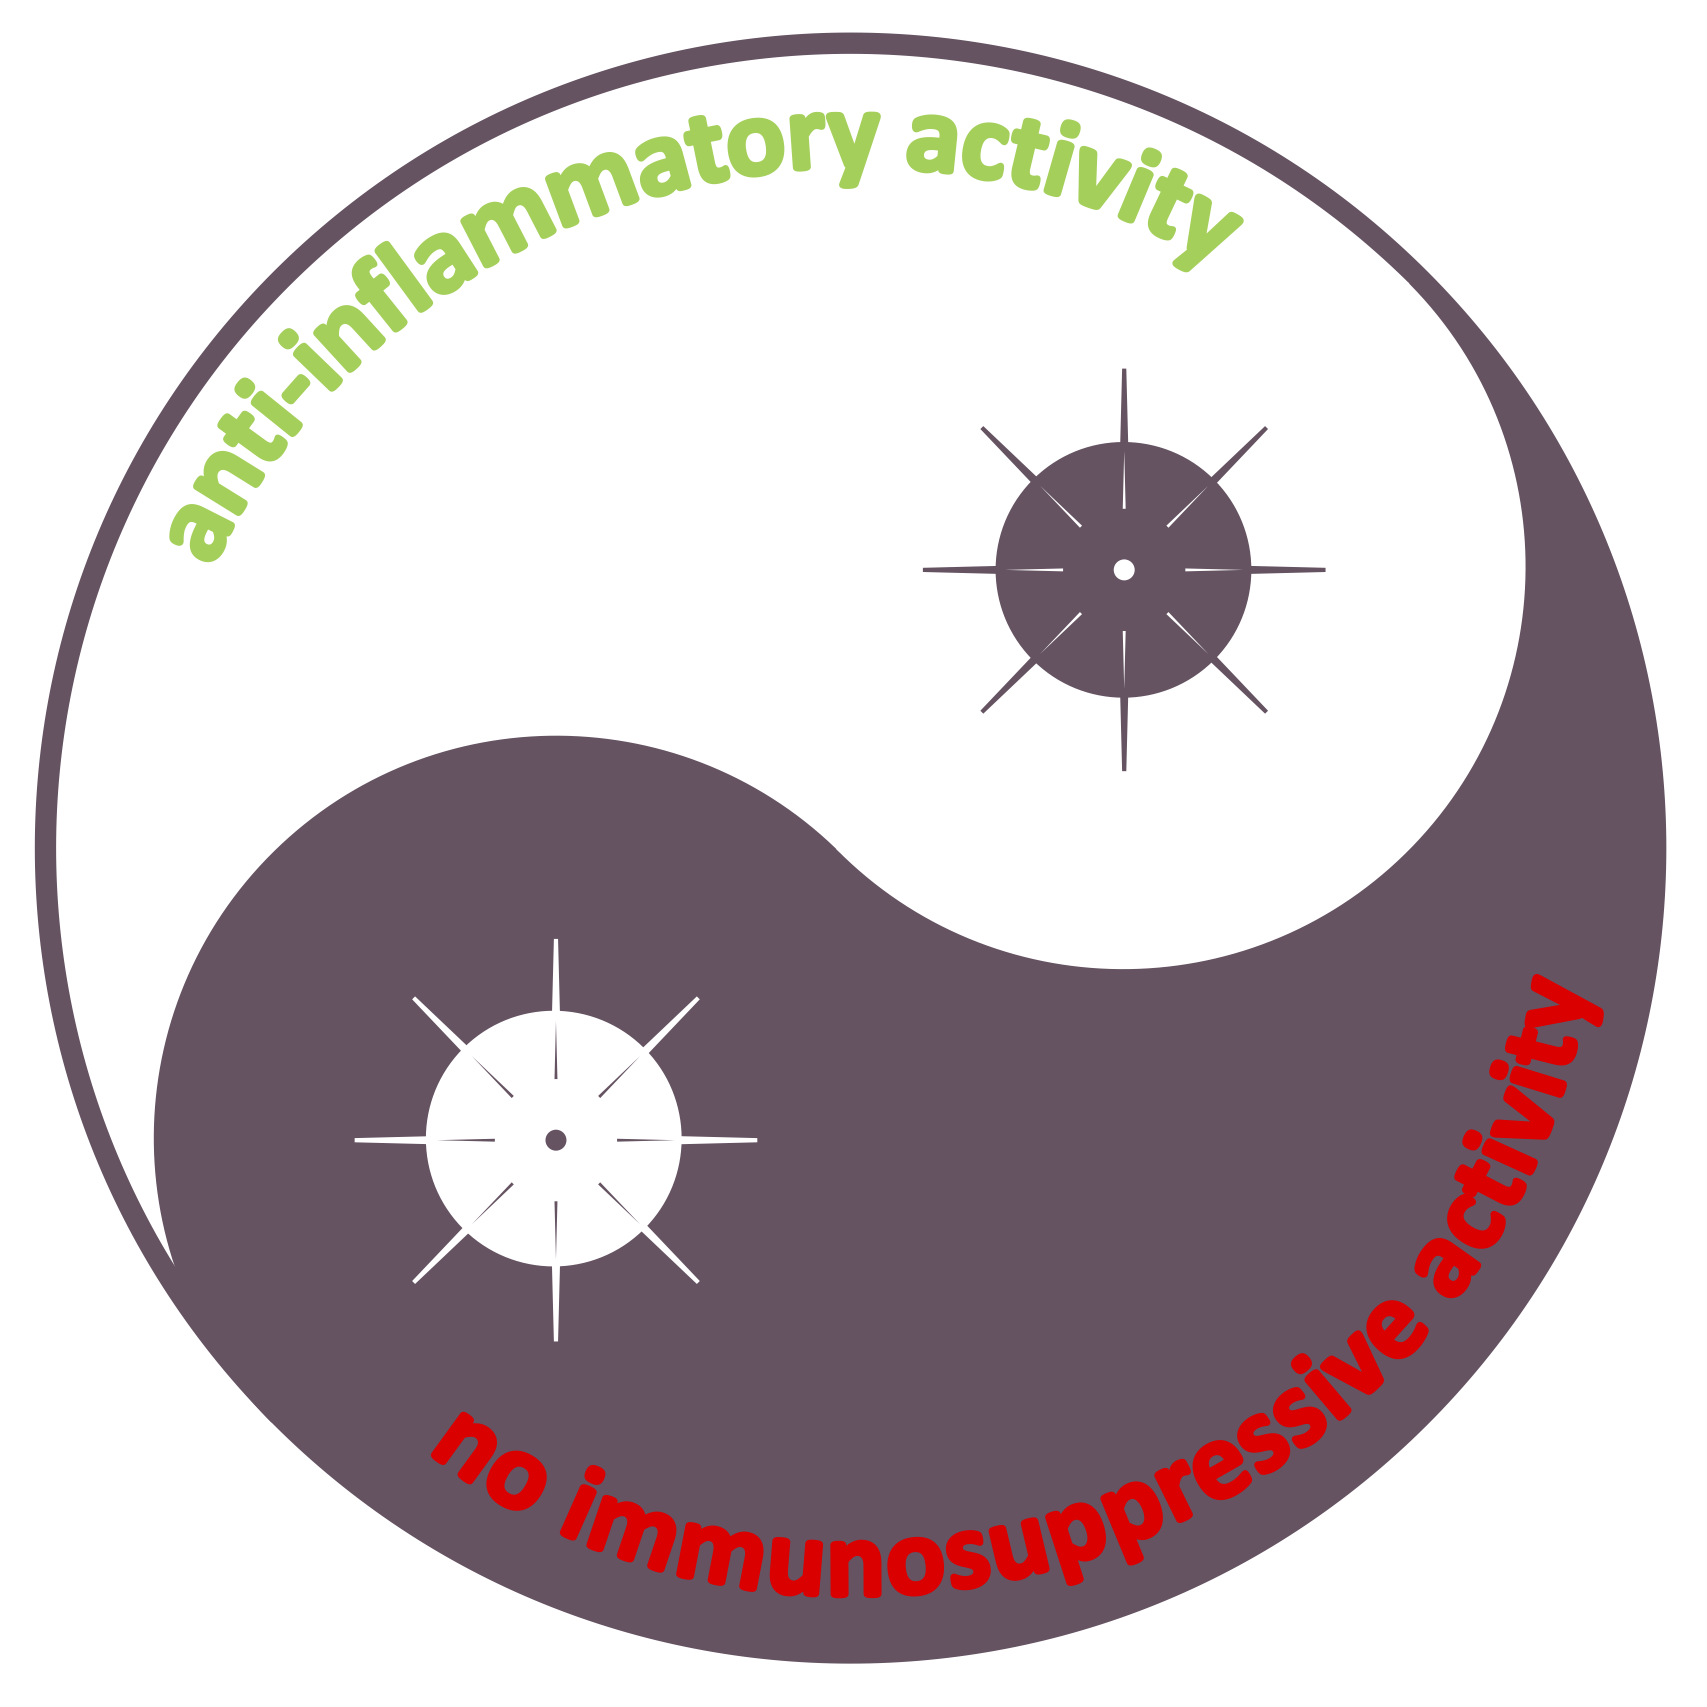 Balancing immunotherapy for COVID-19: anti-inflammatory (✓) versus immunosuppressive (✗) activity